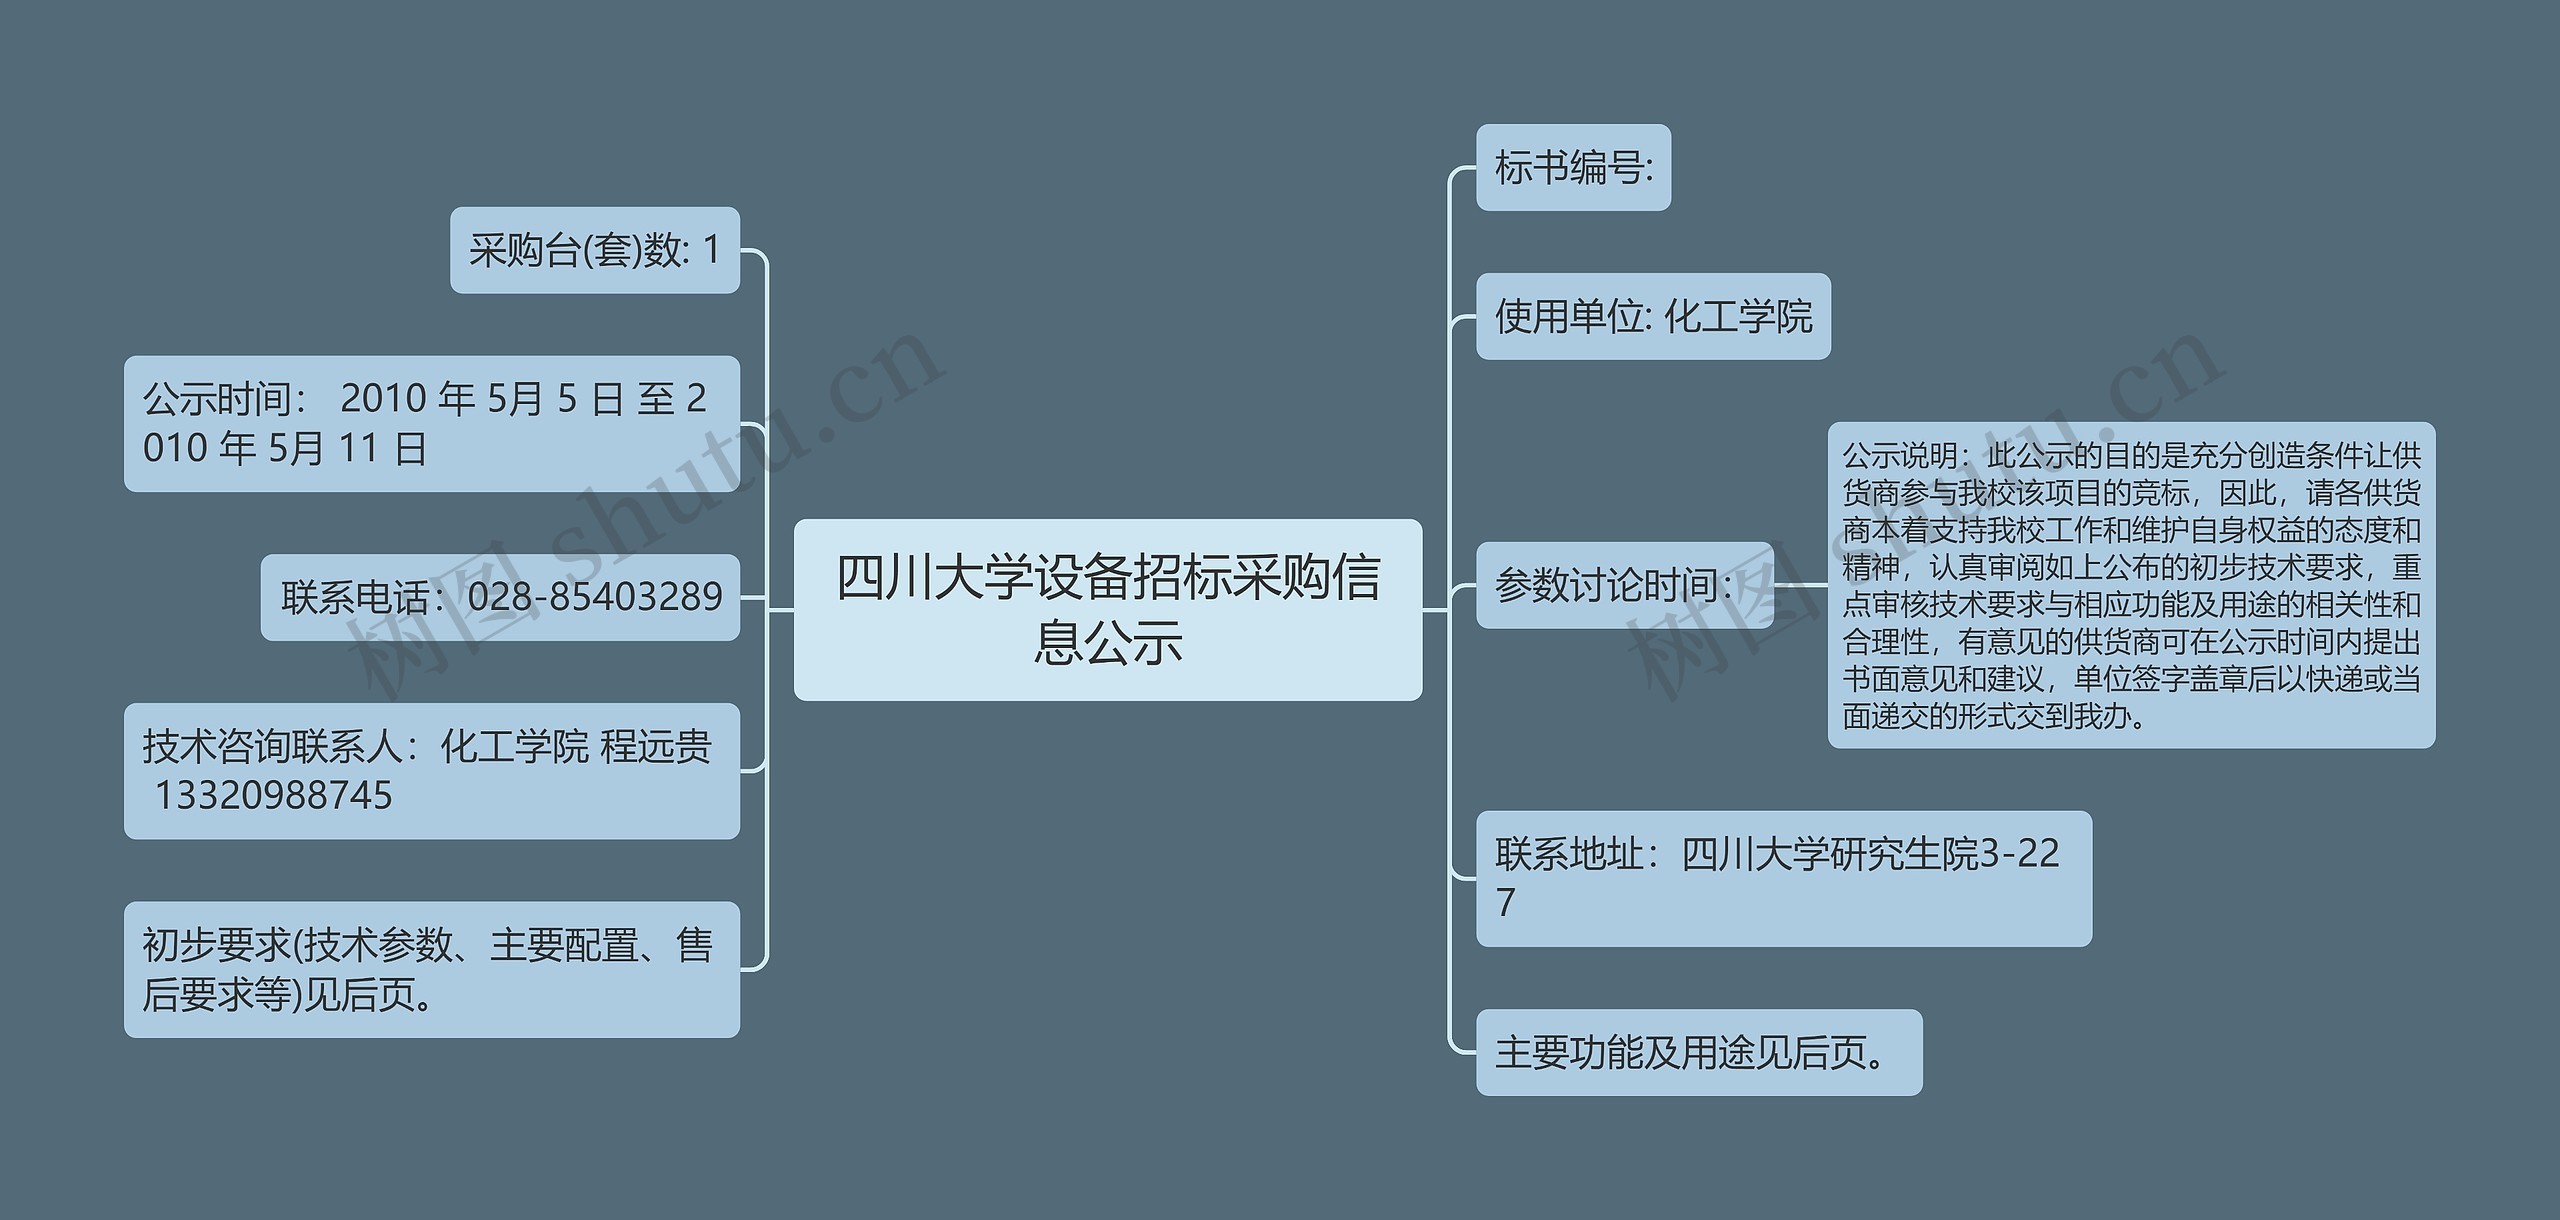 四川大学设备招标采购信息公示思维导图